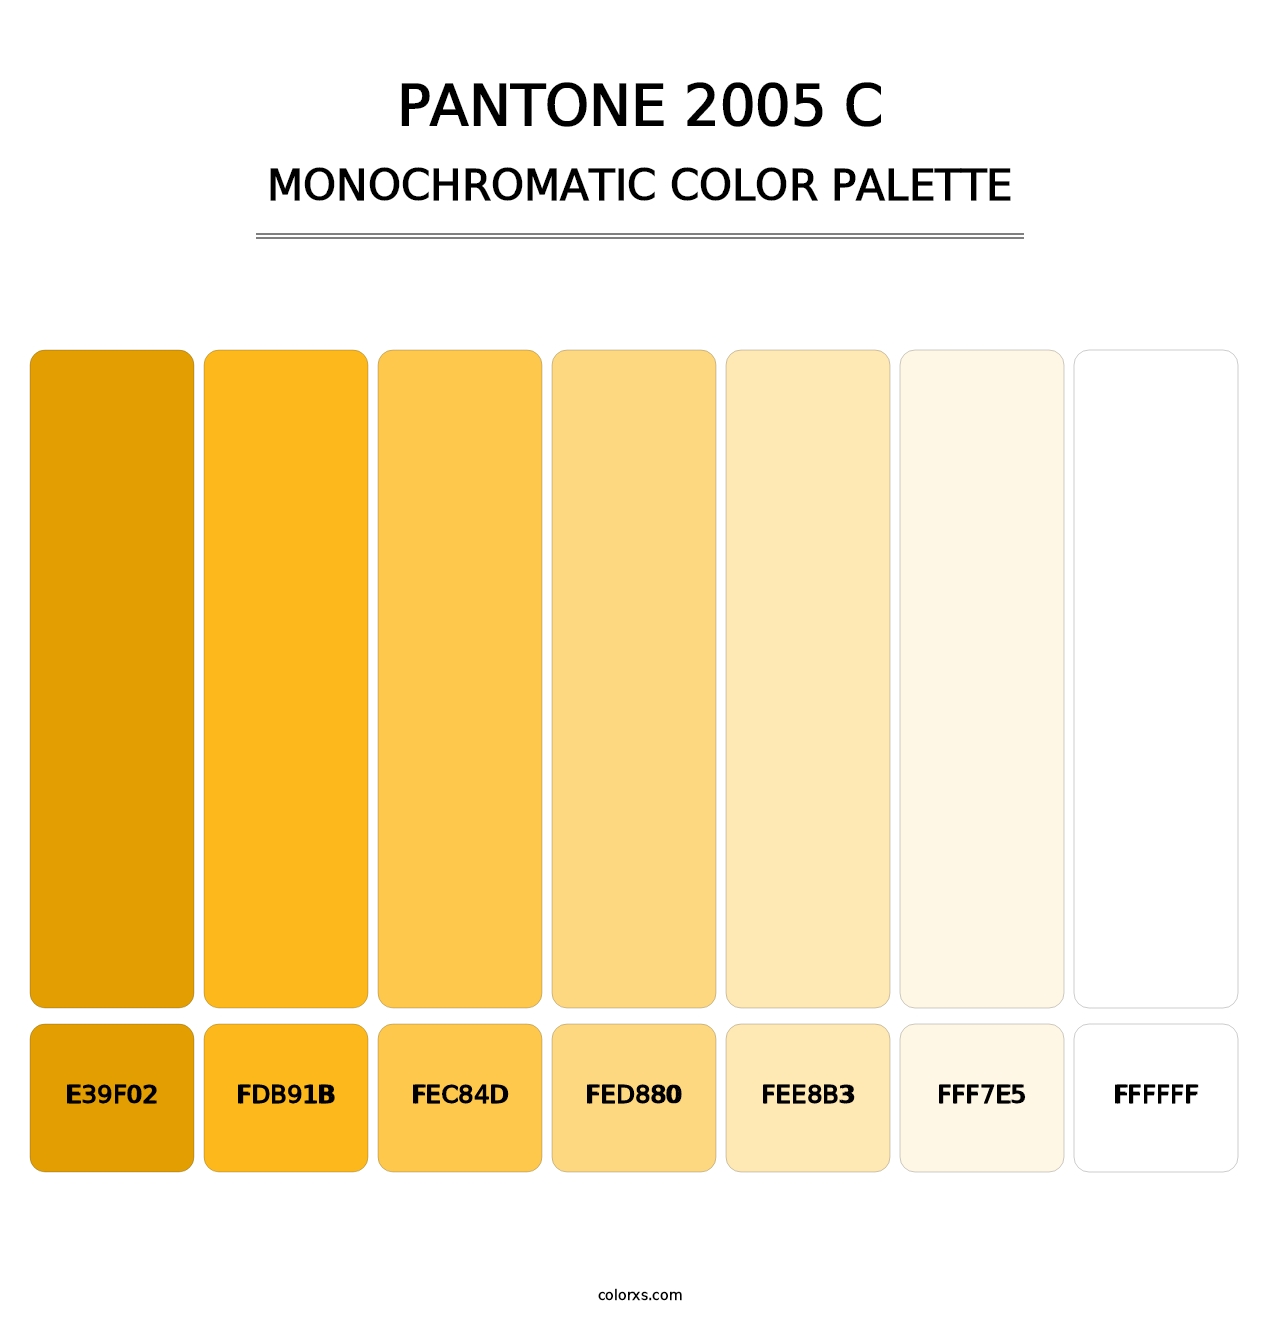 PANTONE 2005 C - Monochromatic Color Palette